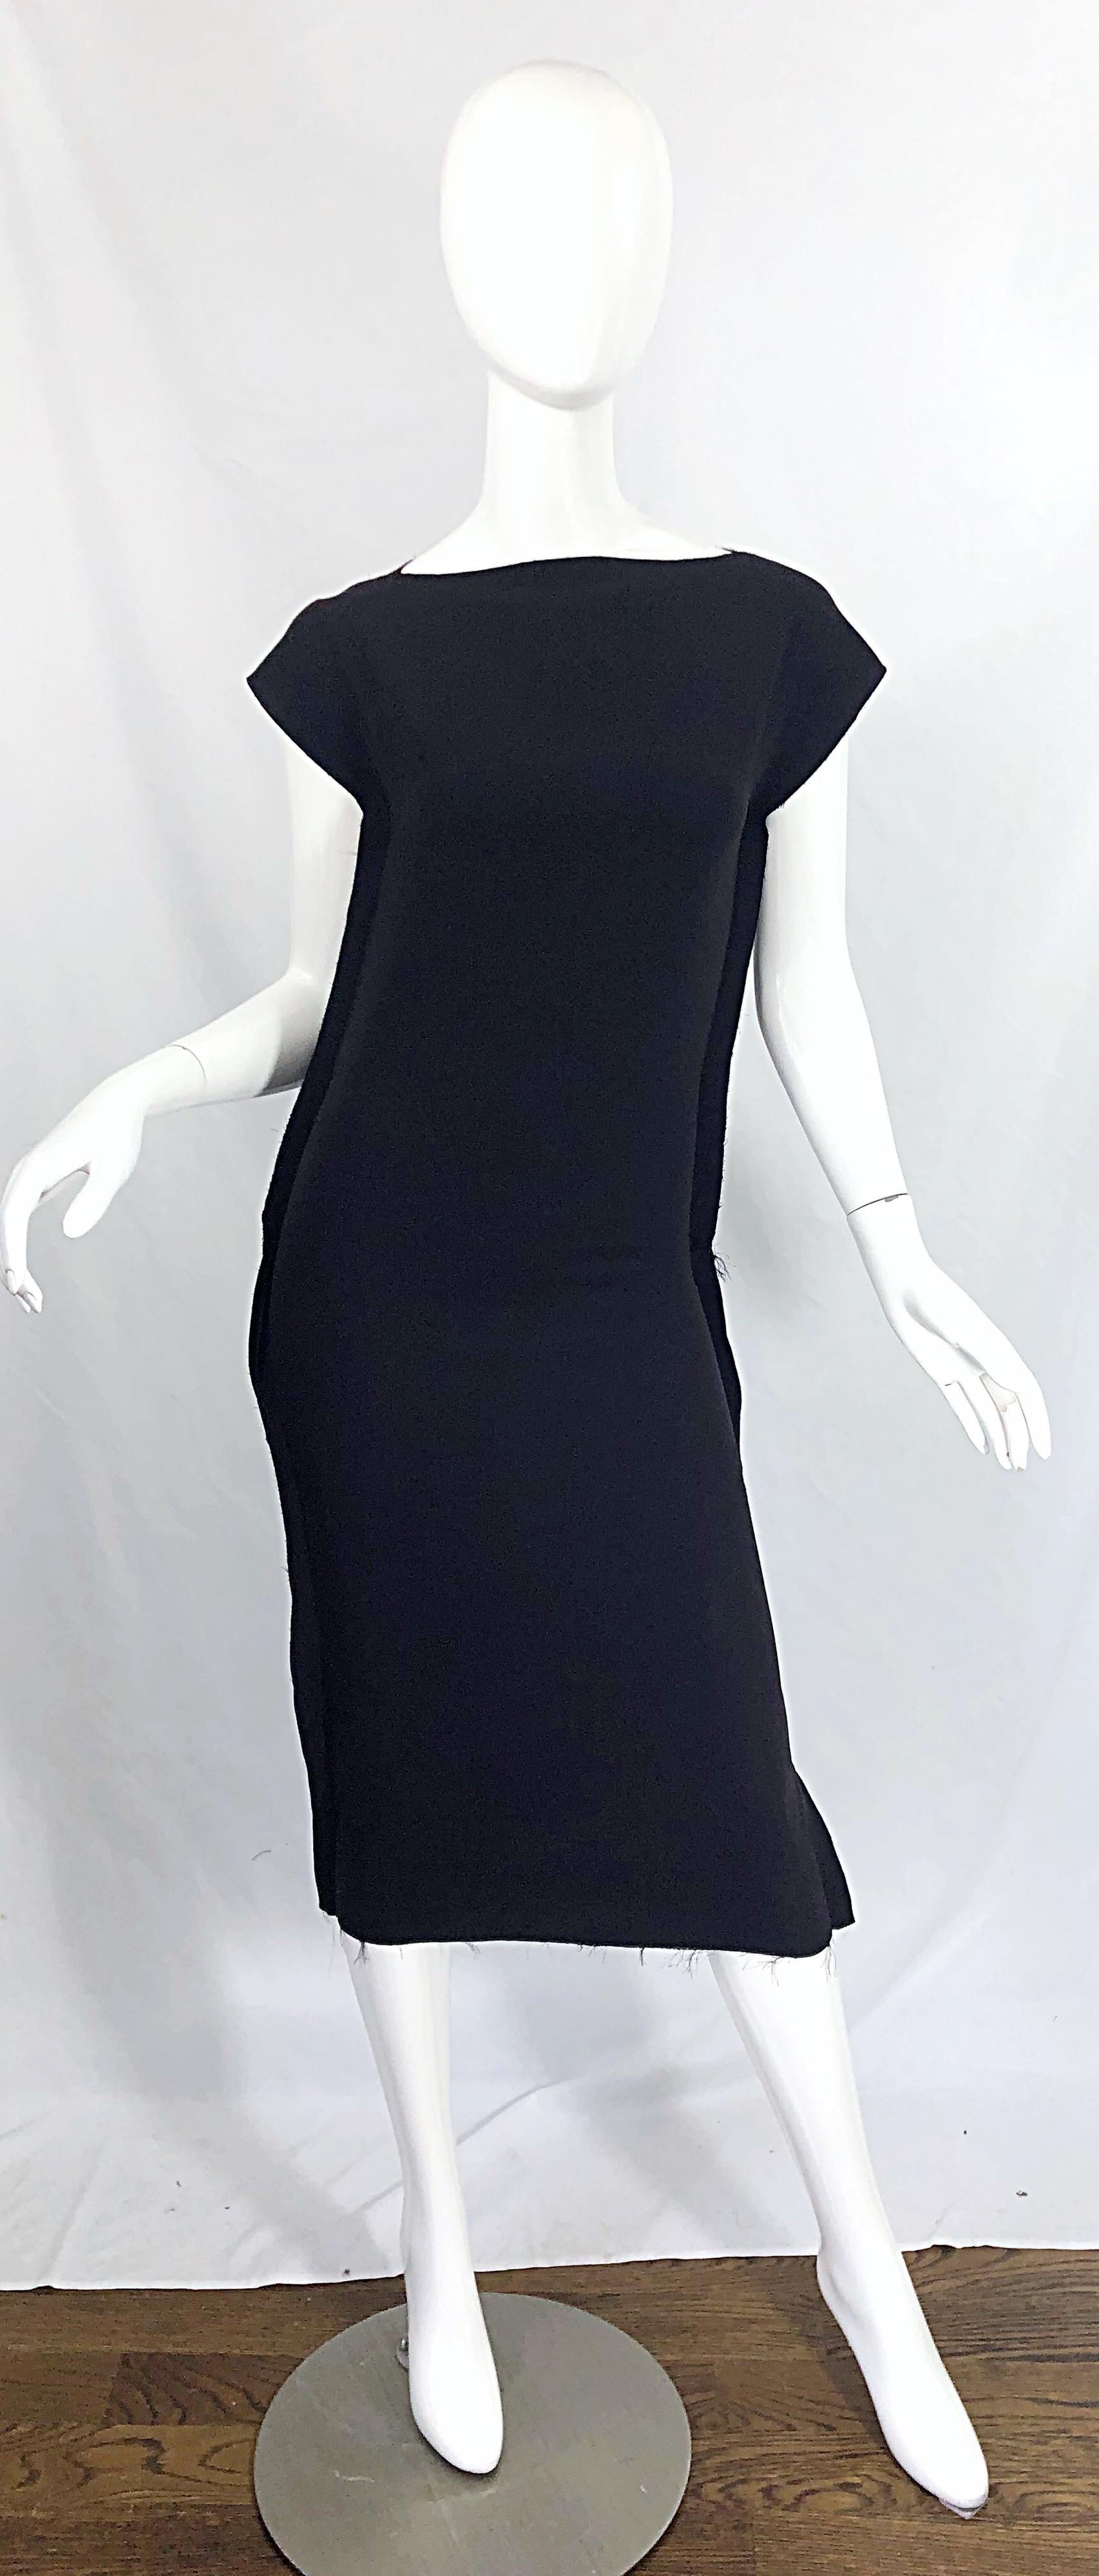 Une telle prise étonnante sur la petite robe noire ! COLLECTION CALVIN KLEIN - Robe midi à manches courtes en jersey noir 